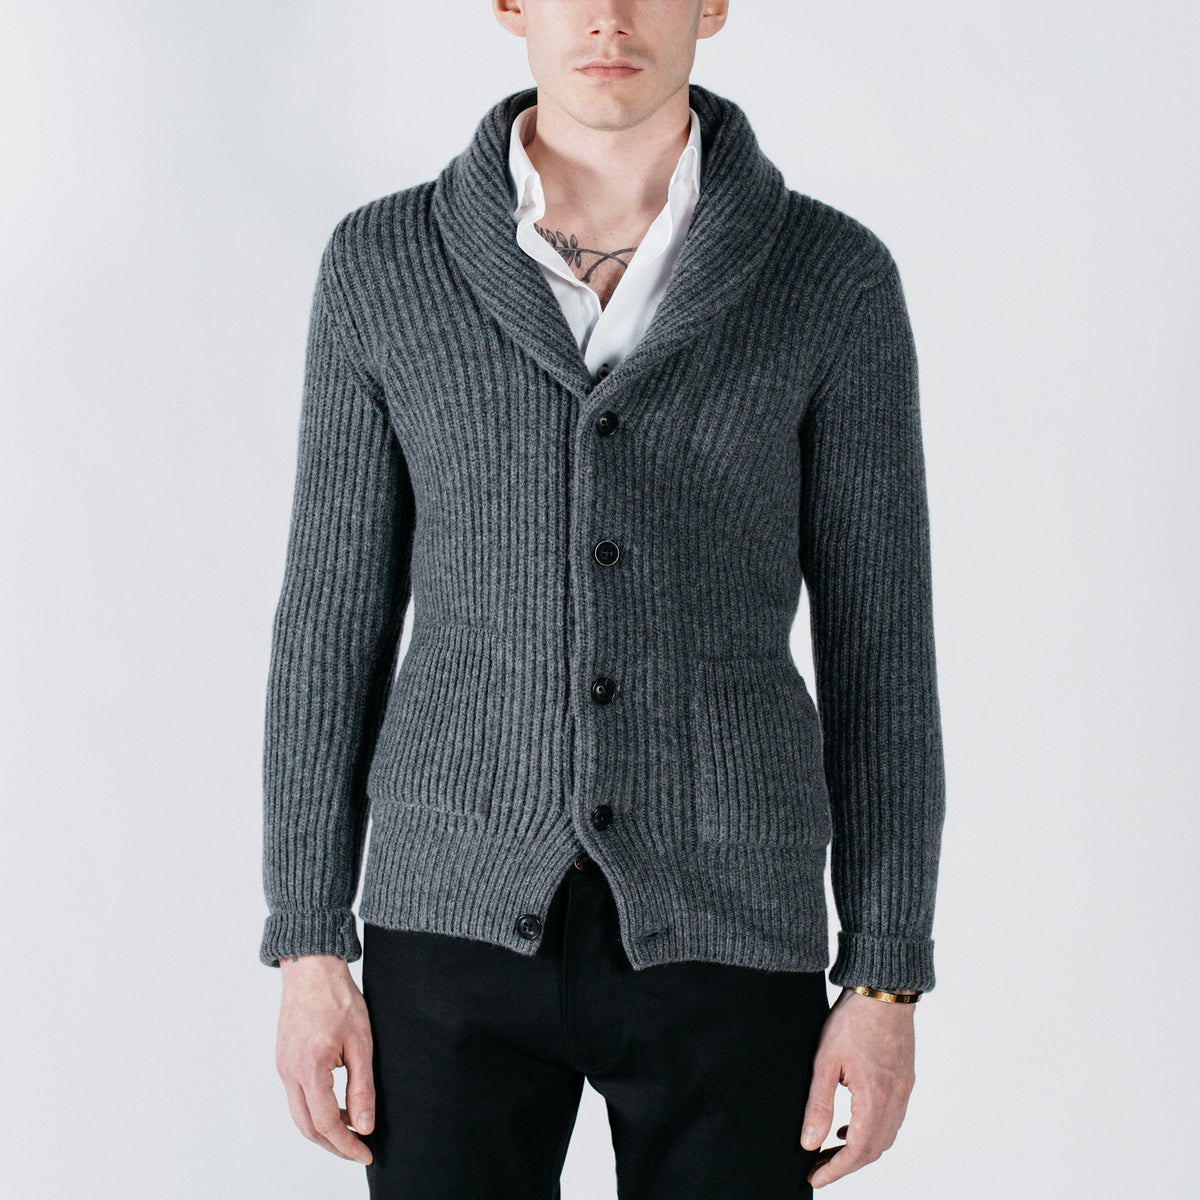 Rogue Shawl Cardigan - Darby Grey knitwear Commonwealth Proper